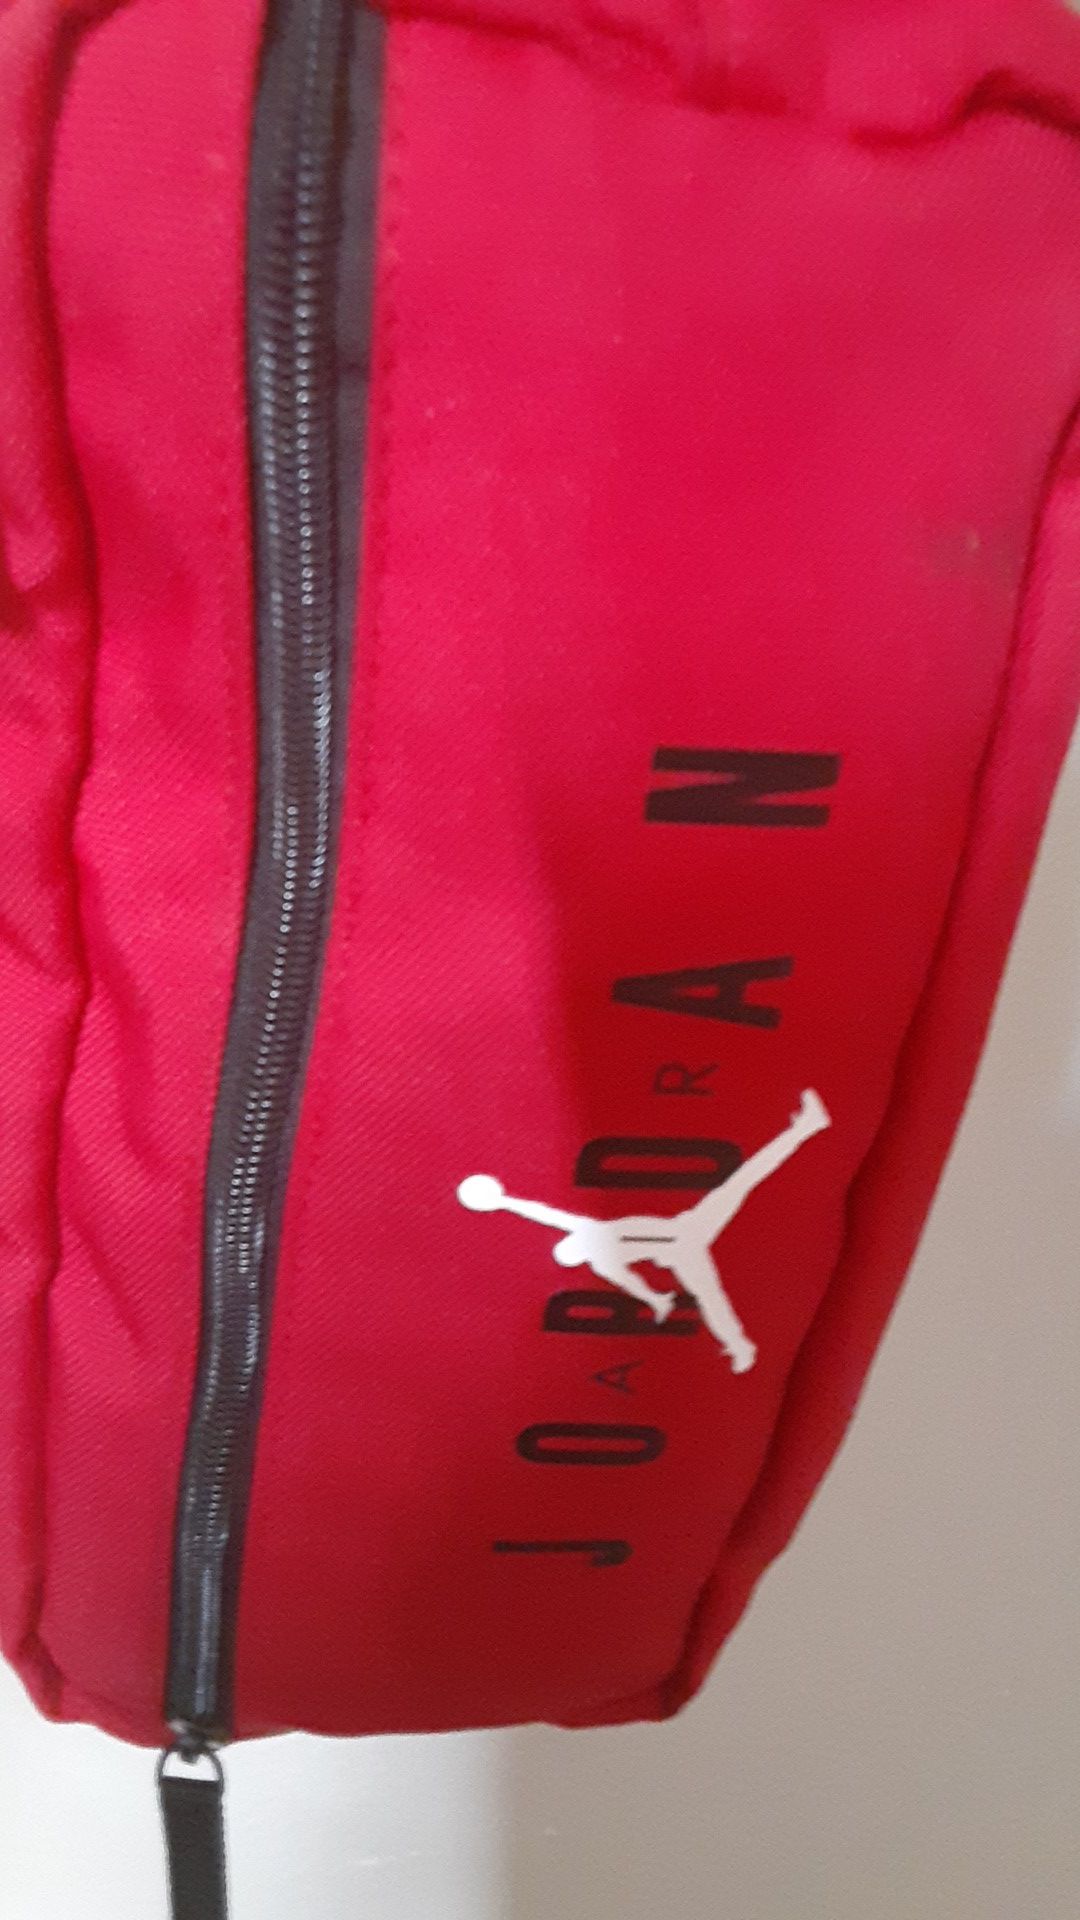 Air Jordan fany pack